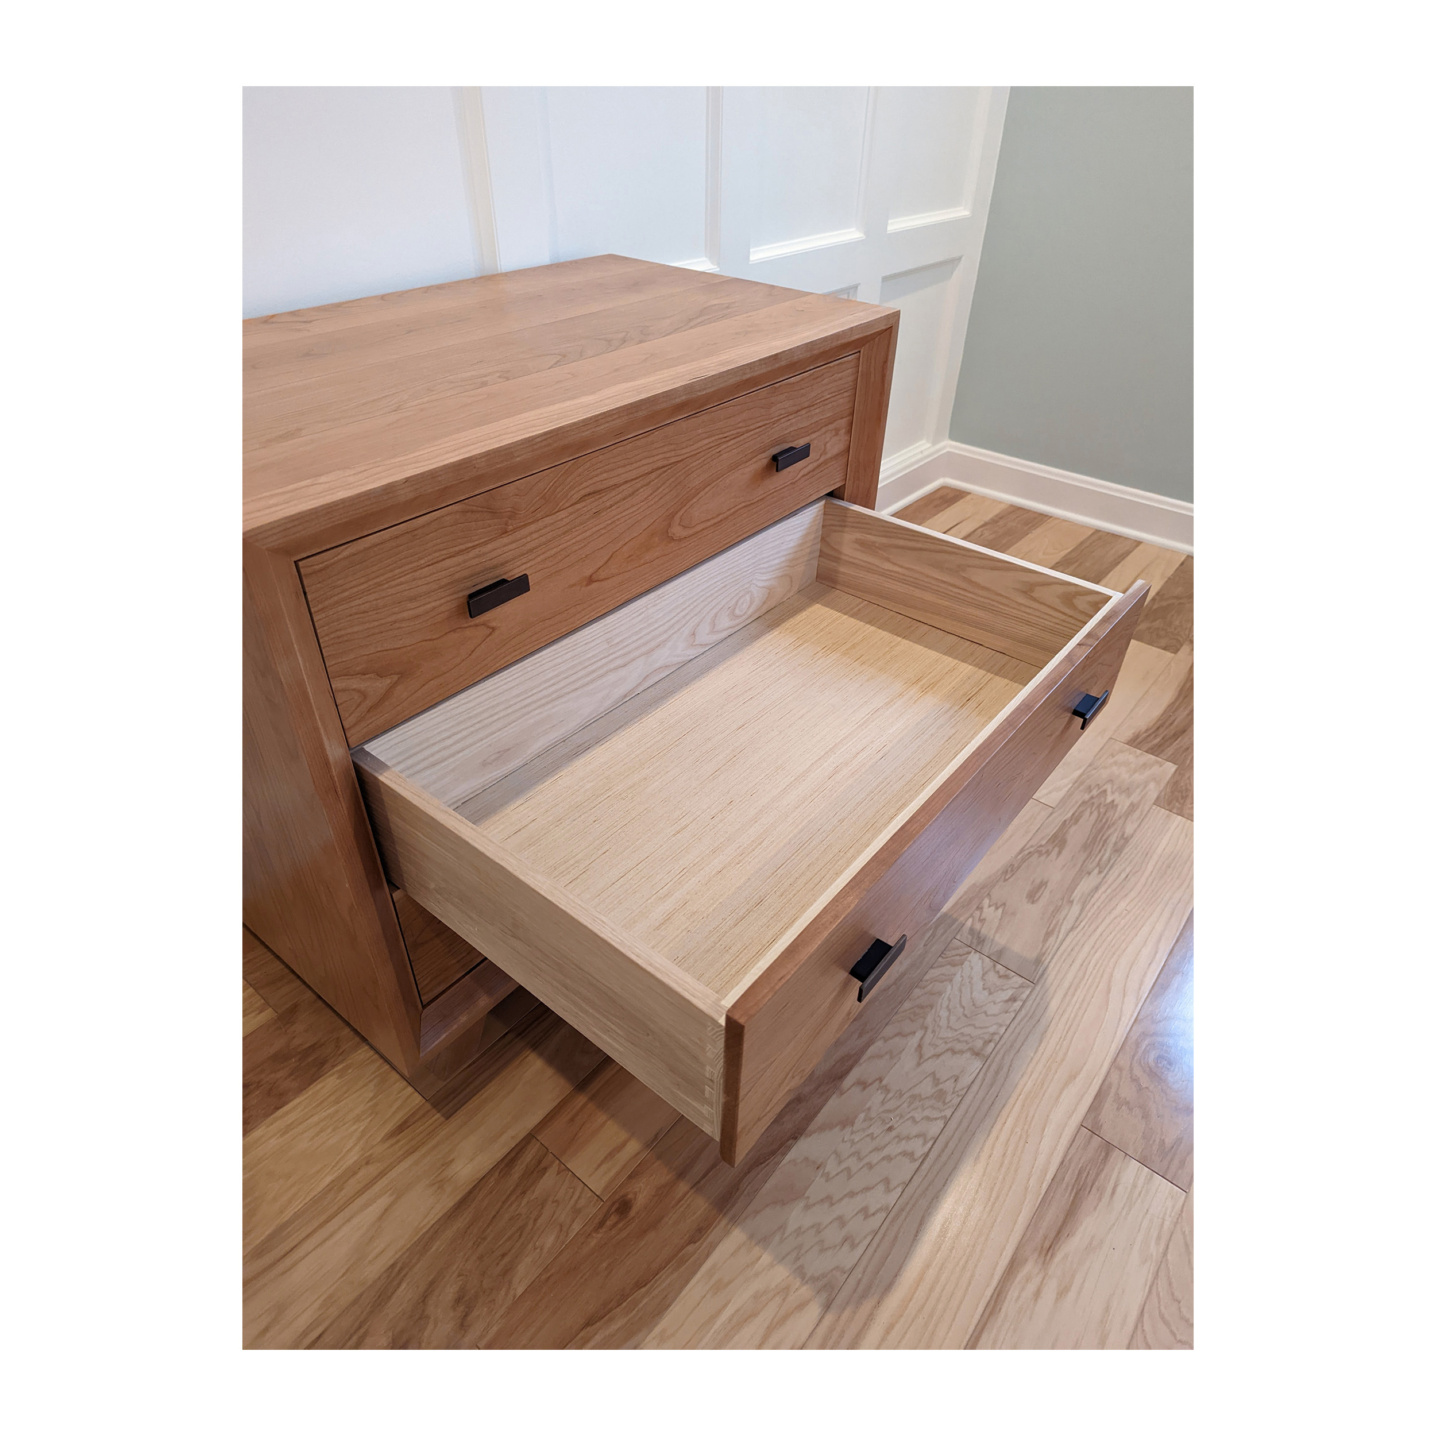 Dovetail full extension dresser drawers